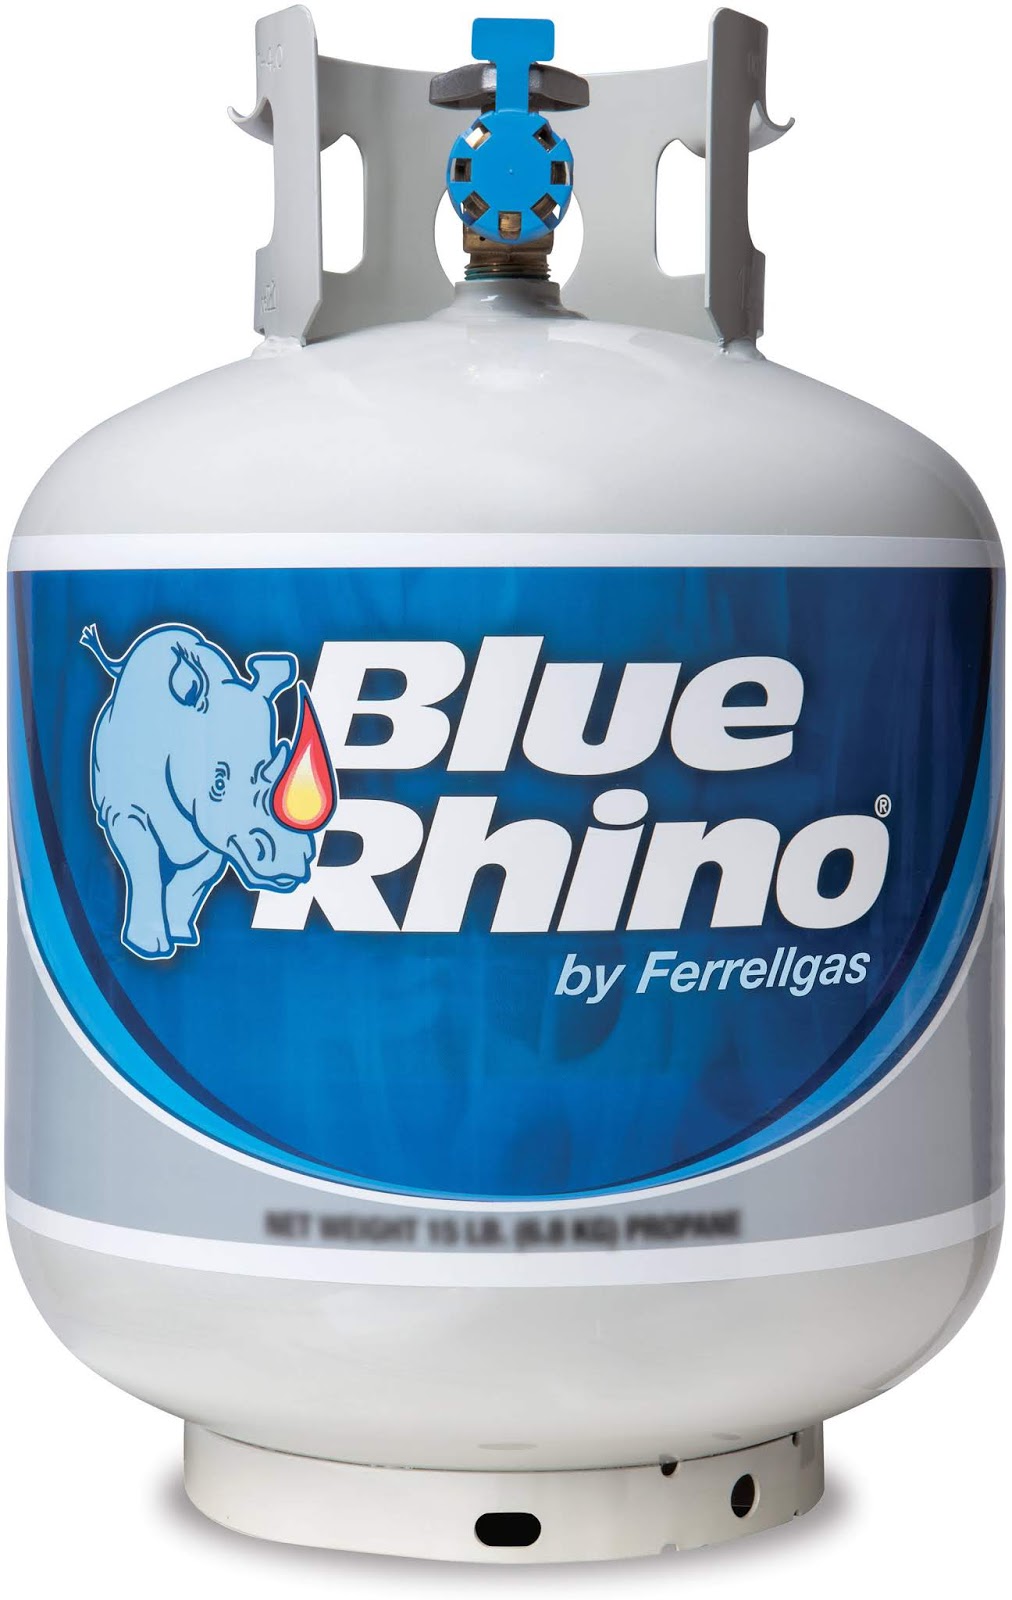 How Does Blue Rhino Propane Work